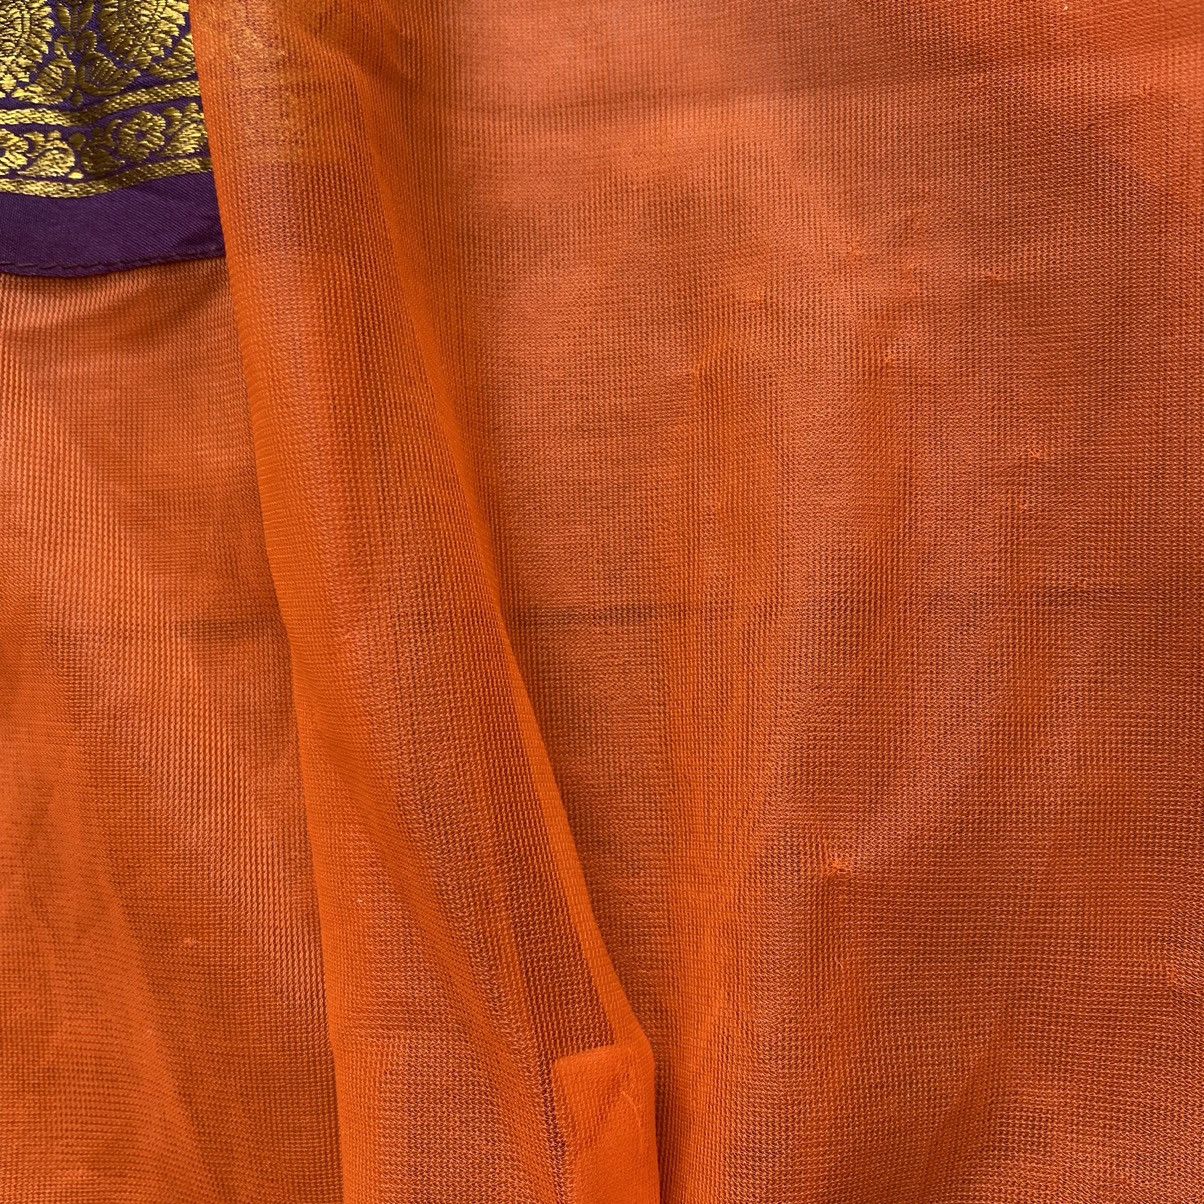 Jean Paul Gaultier Vintage JPG Orange Mesh Shirt With Native Details Size US S / EU 44-46 / 1 - 5 Thumbnail